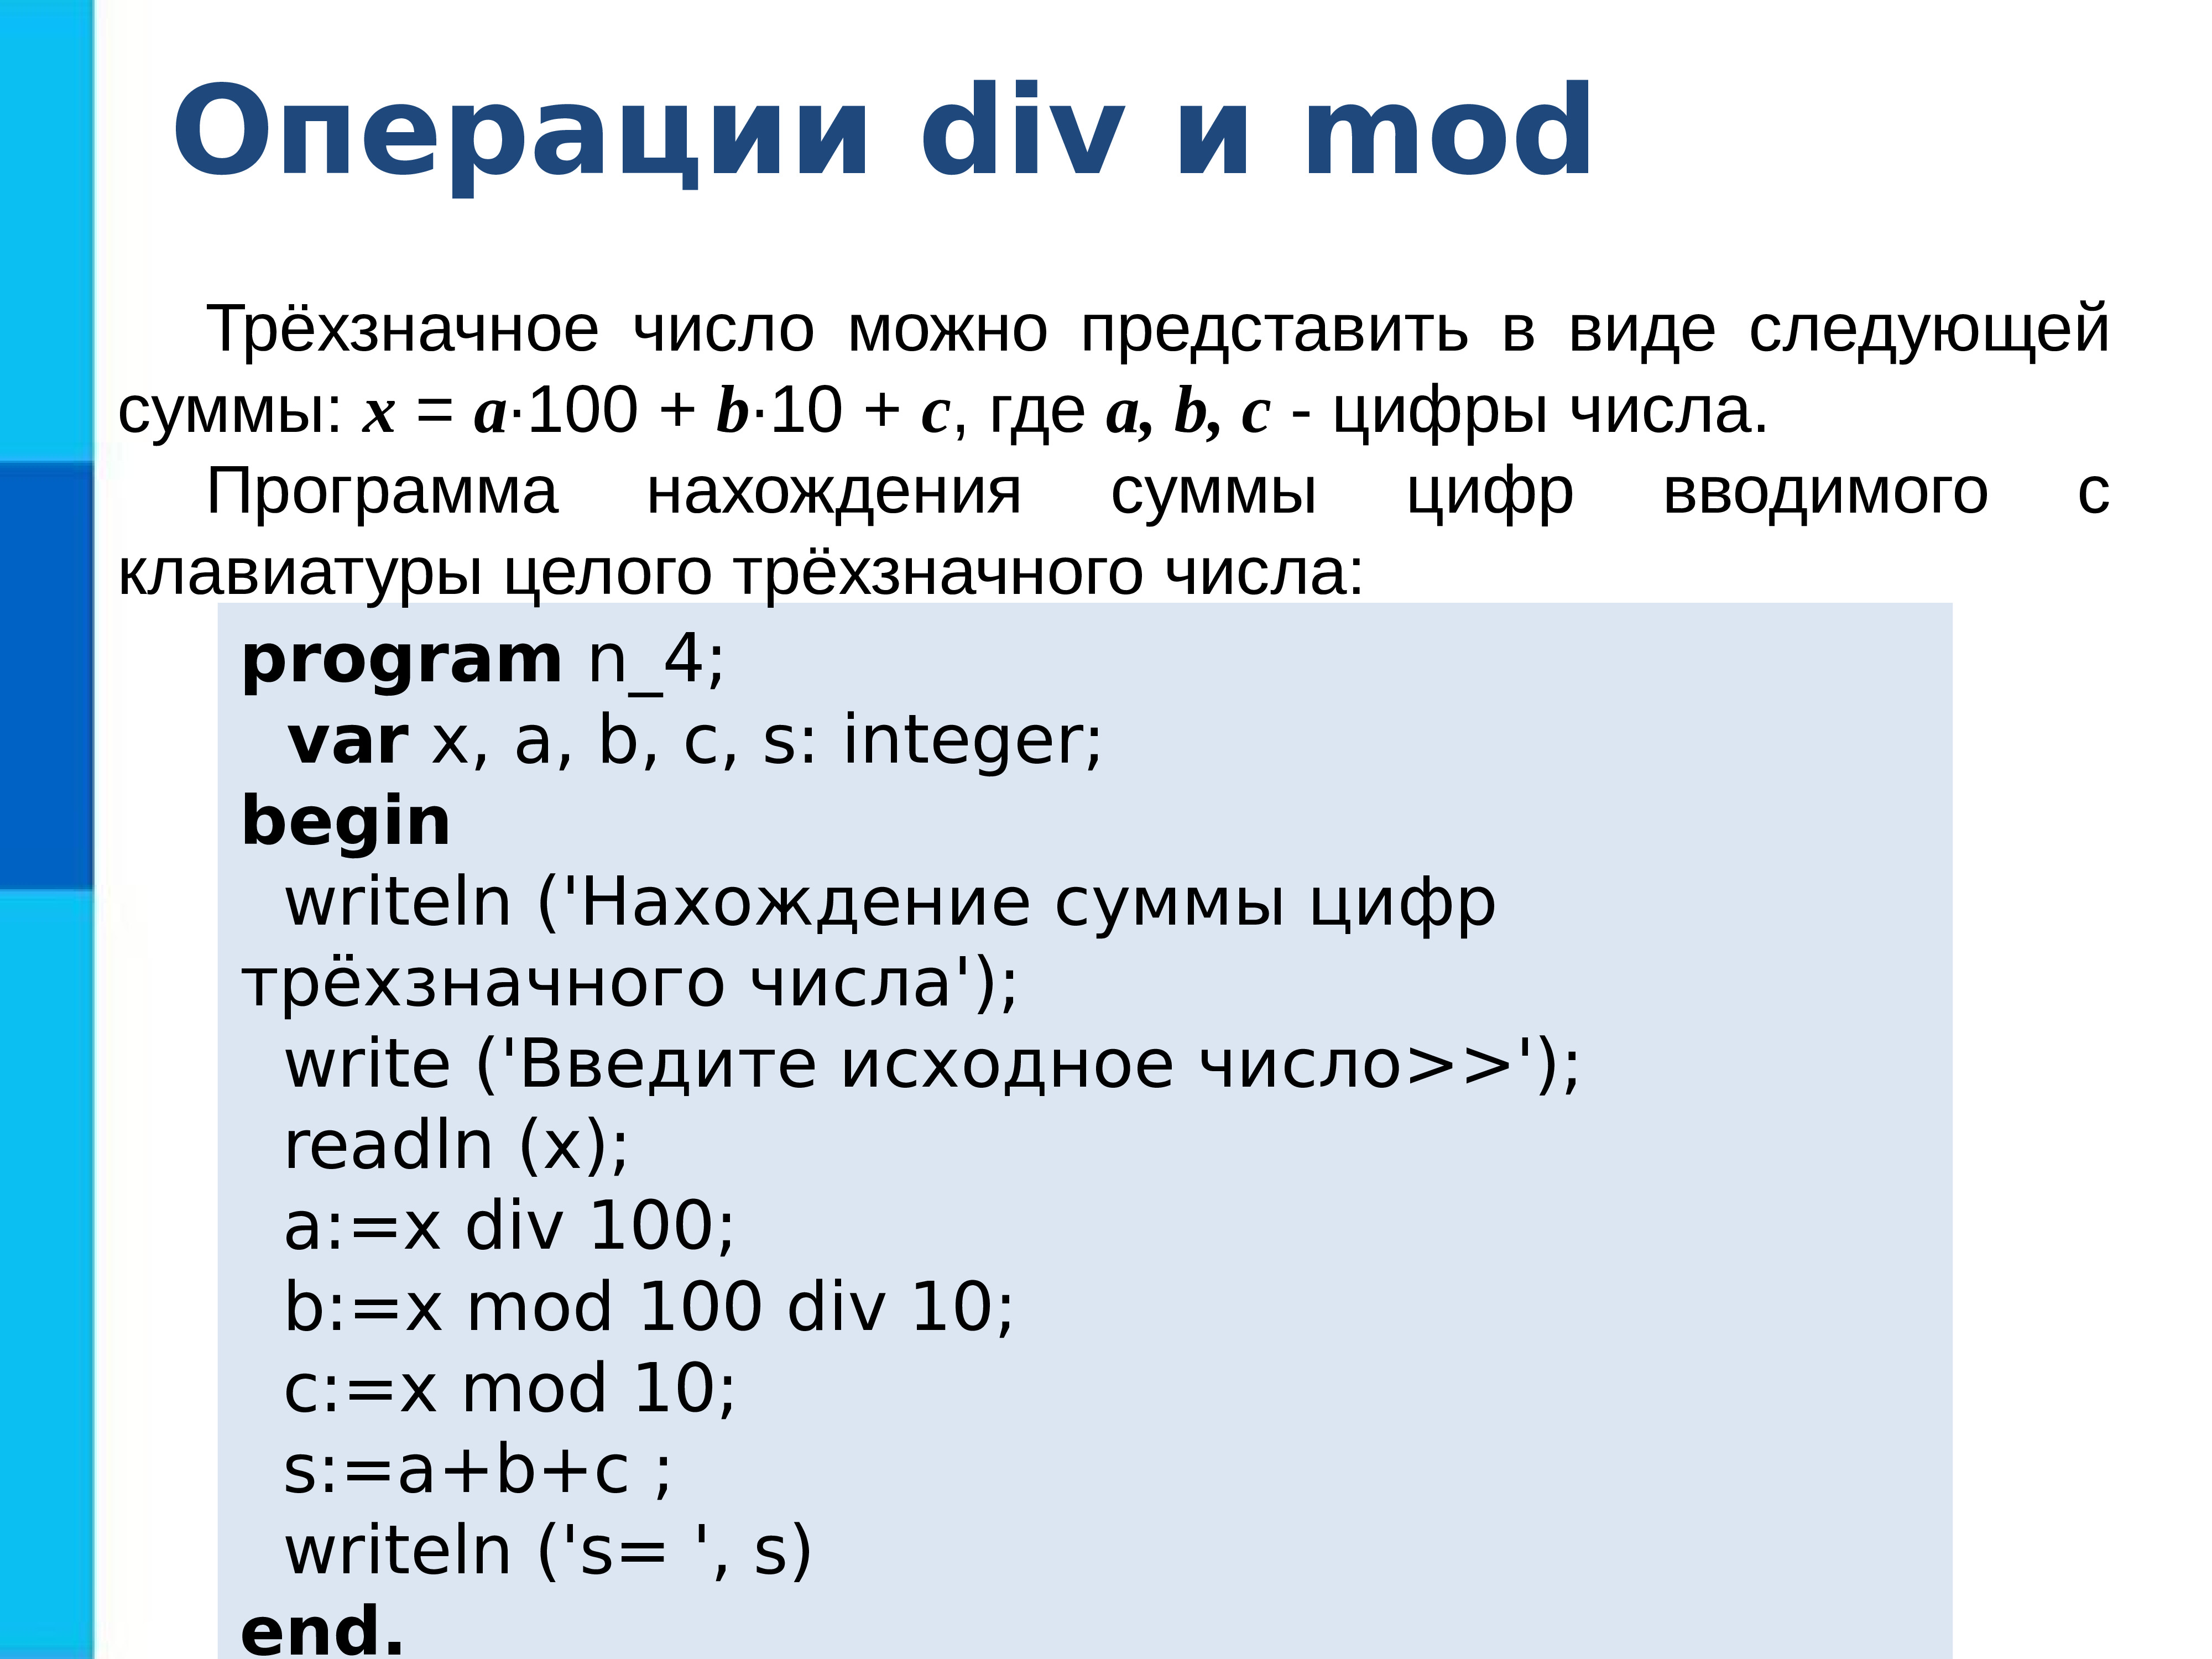 C a x mod b. Программирование линейных алгоритмов. Операция div. Операция div и Mod. Алгоритмы в программировании.